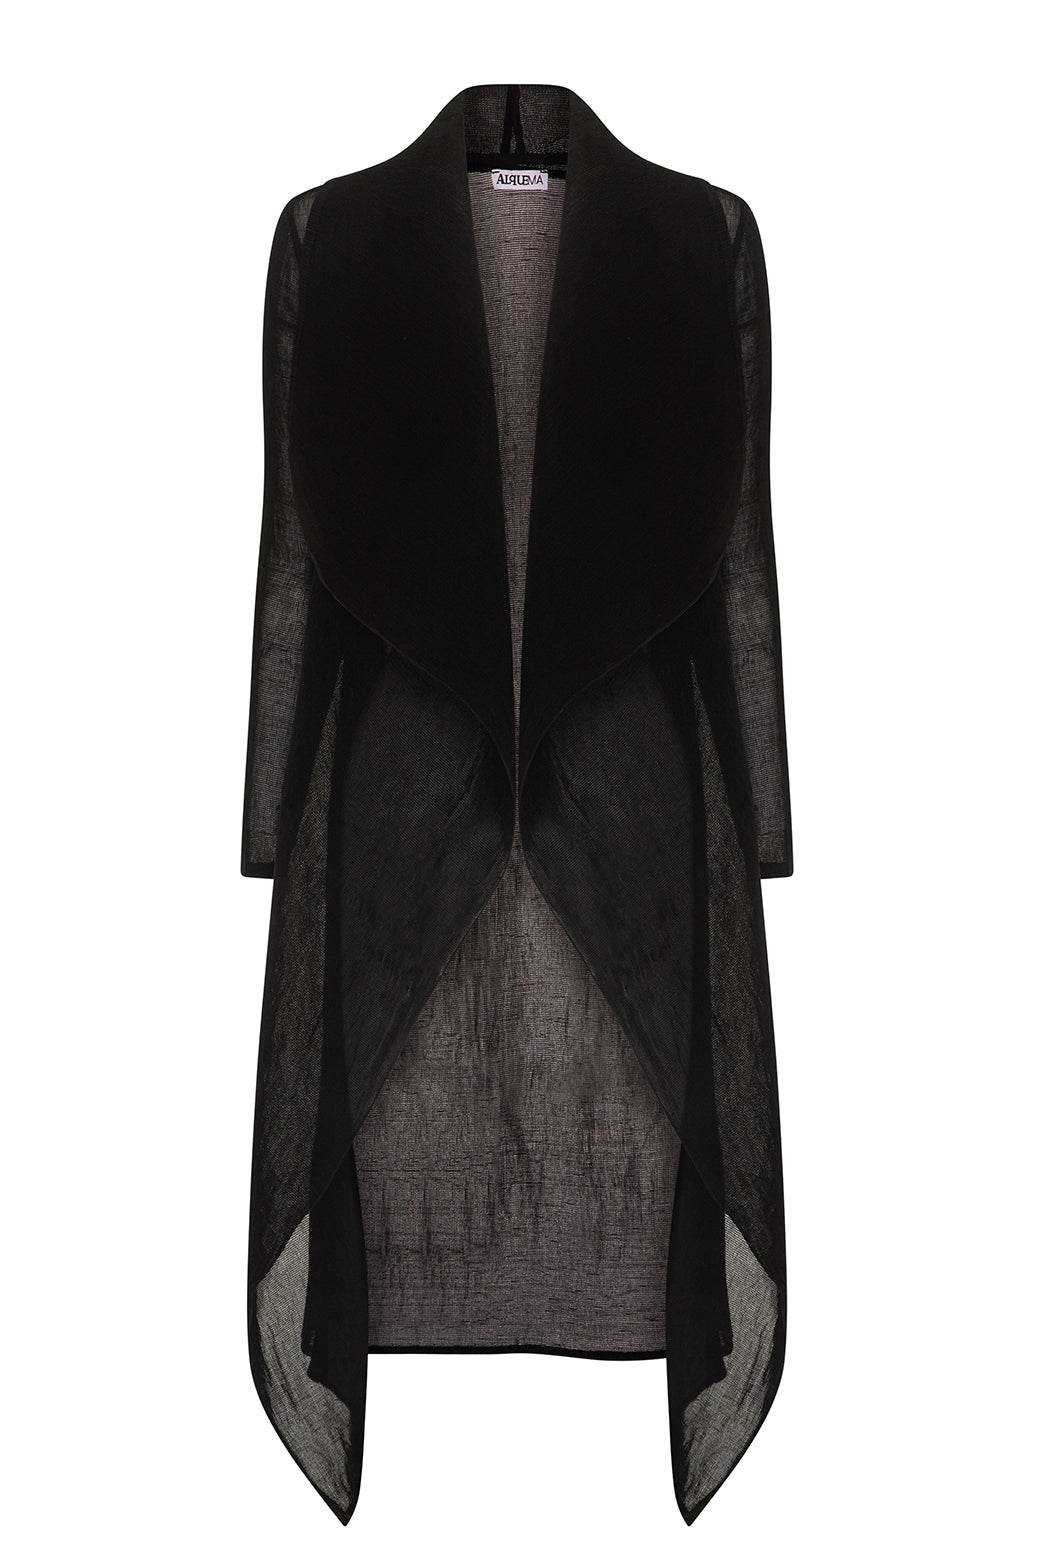 ALQUEMA - Collare Coat Black - Magpie Style